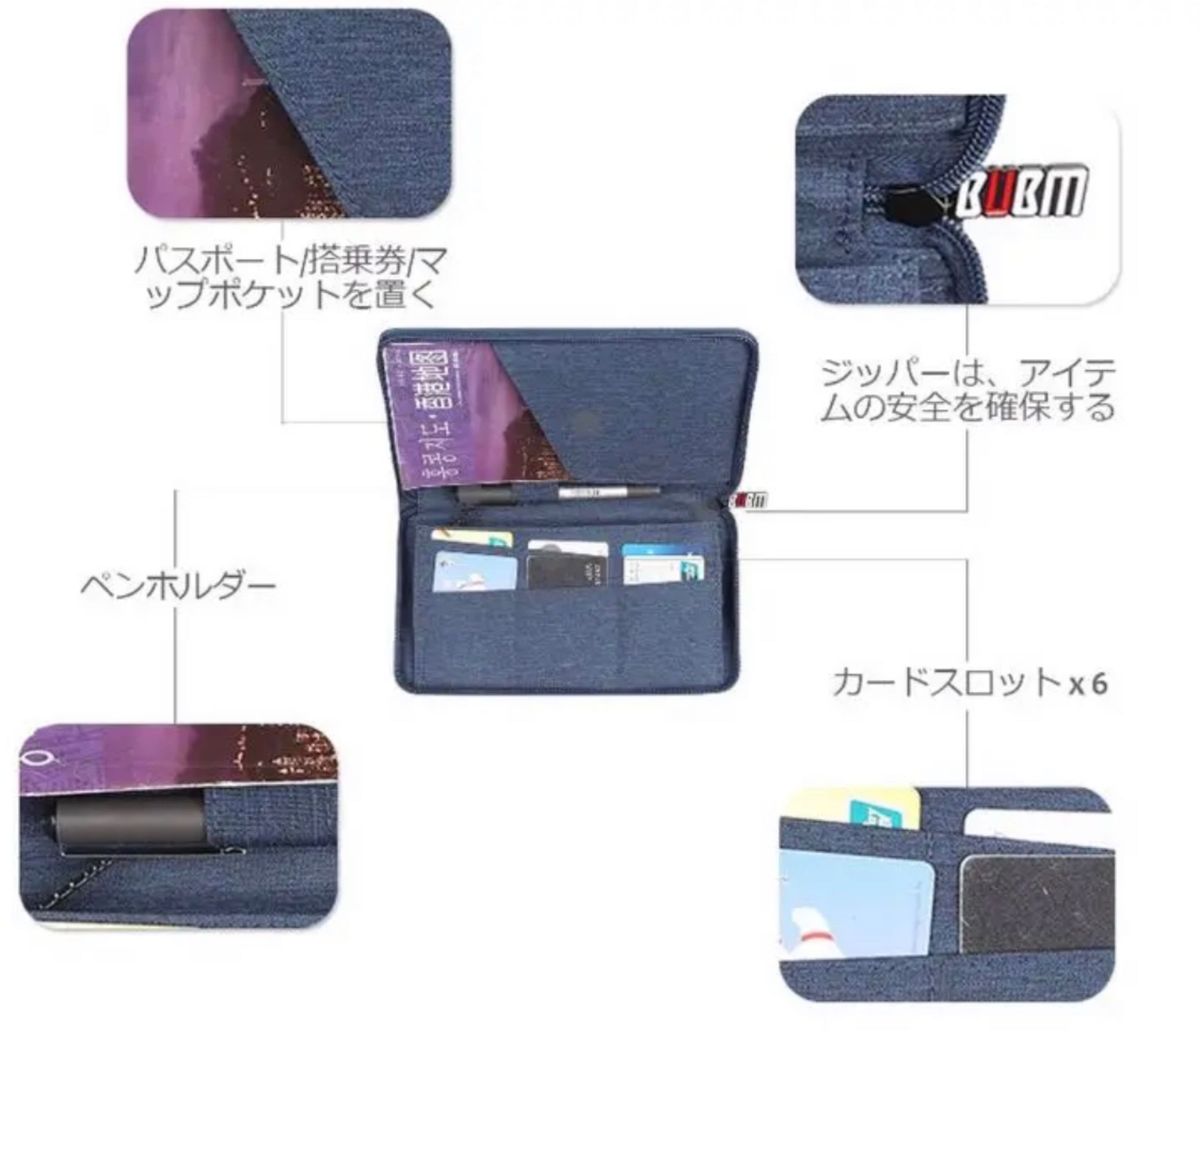 パスポートパッケージ　収納パッケージ　多機能ドキュメントバッグ　航空券フォルダ　ポータブルカード証明書パッケージ(青)